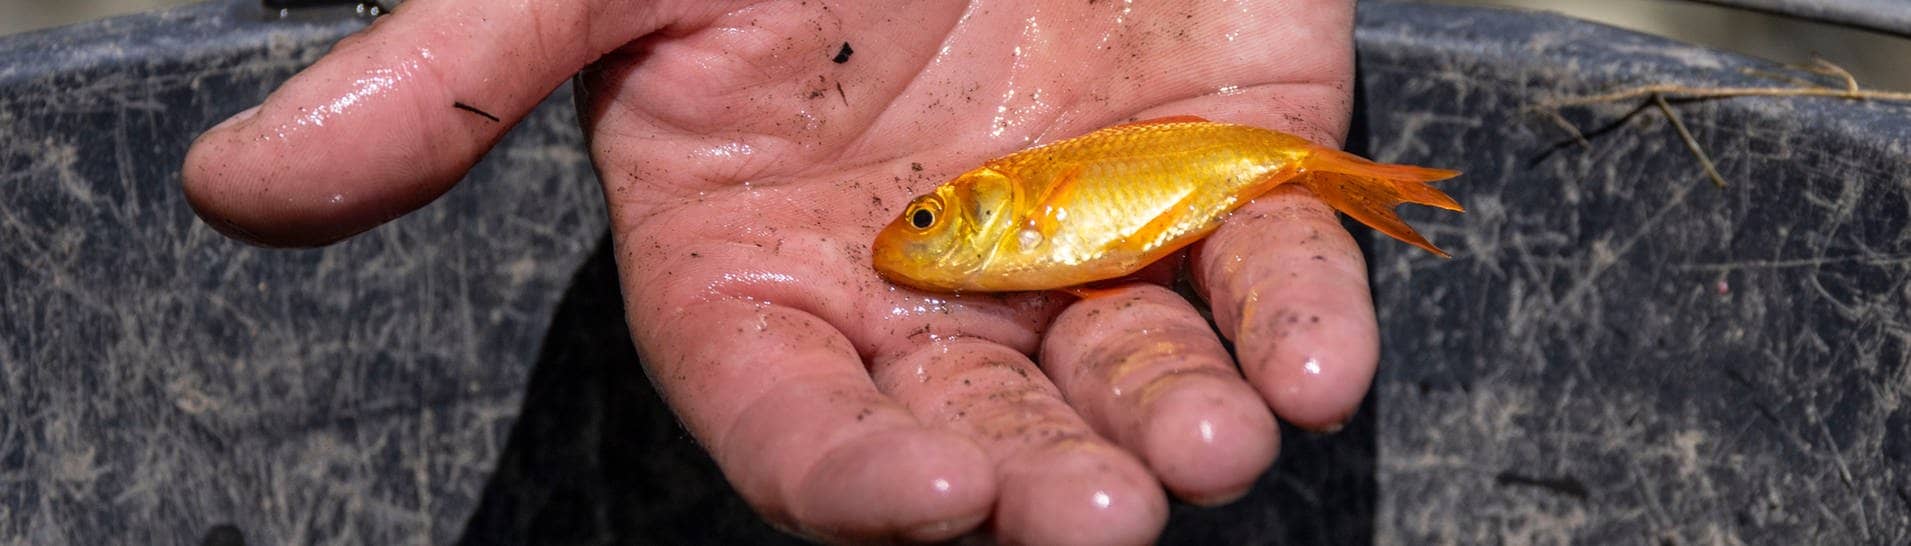 Archivbild: Ein kleiner Goldfisch liegt in einer Hand über einem Eimer.